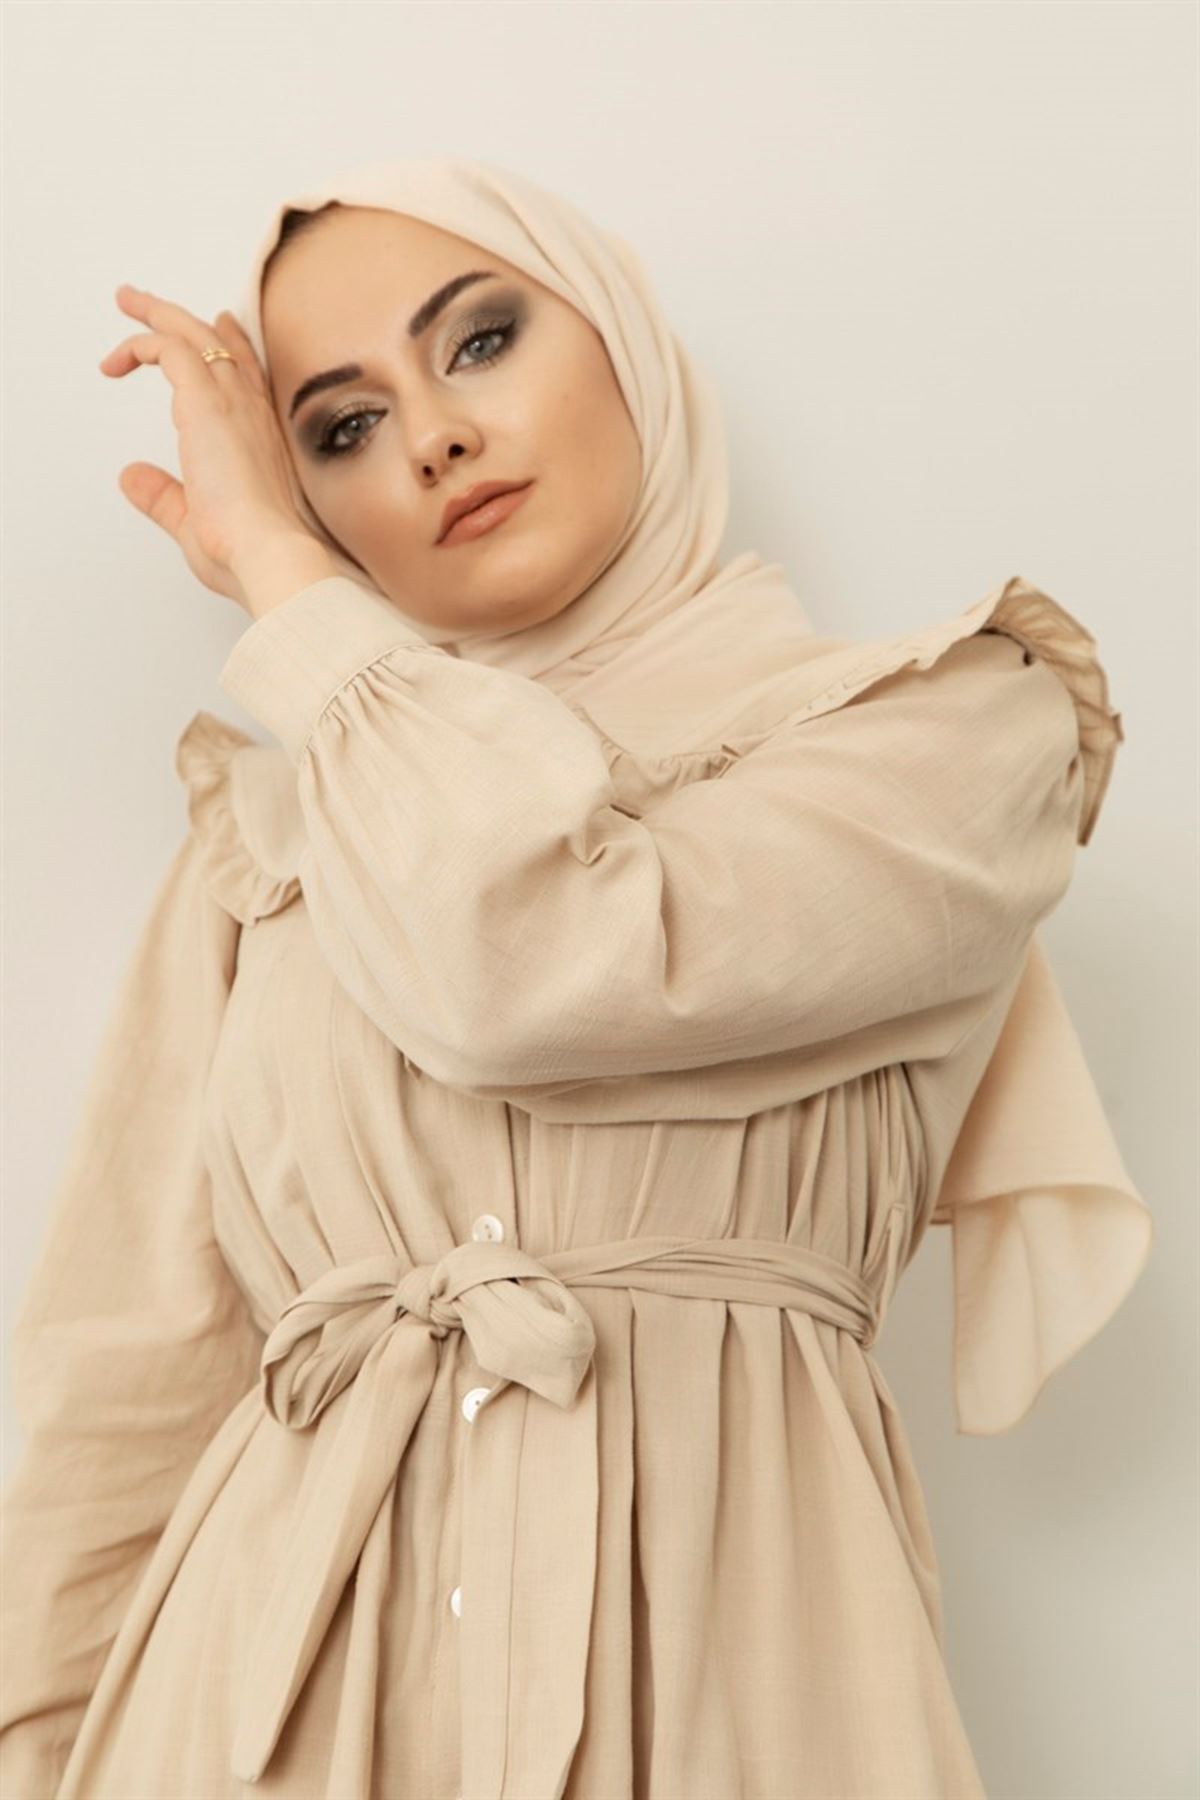  Kadın Bebe Yaka Boydan Düğmeli Elbise-bej